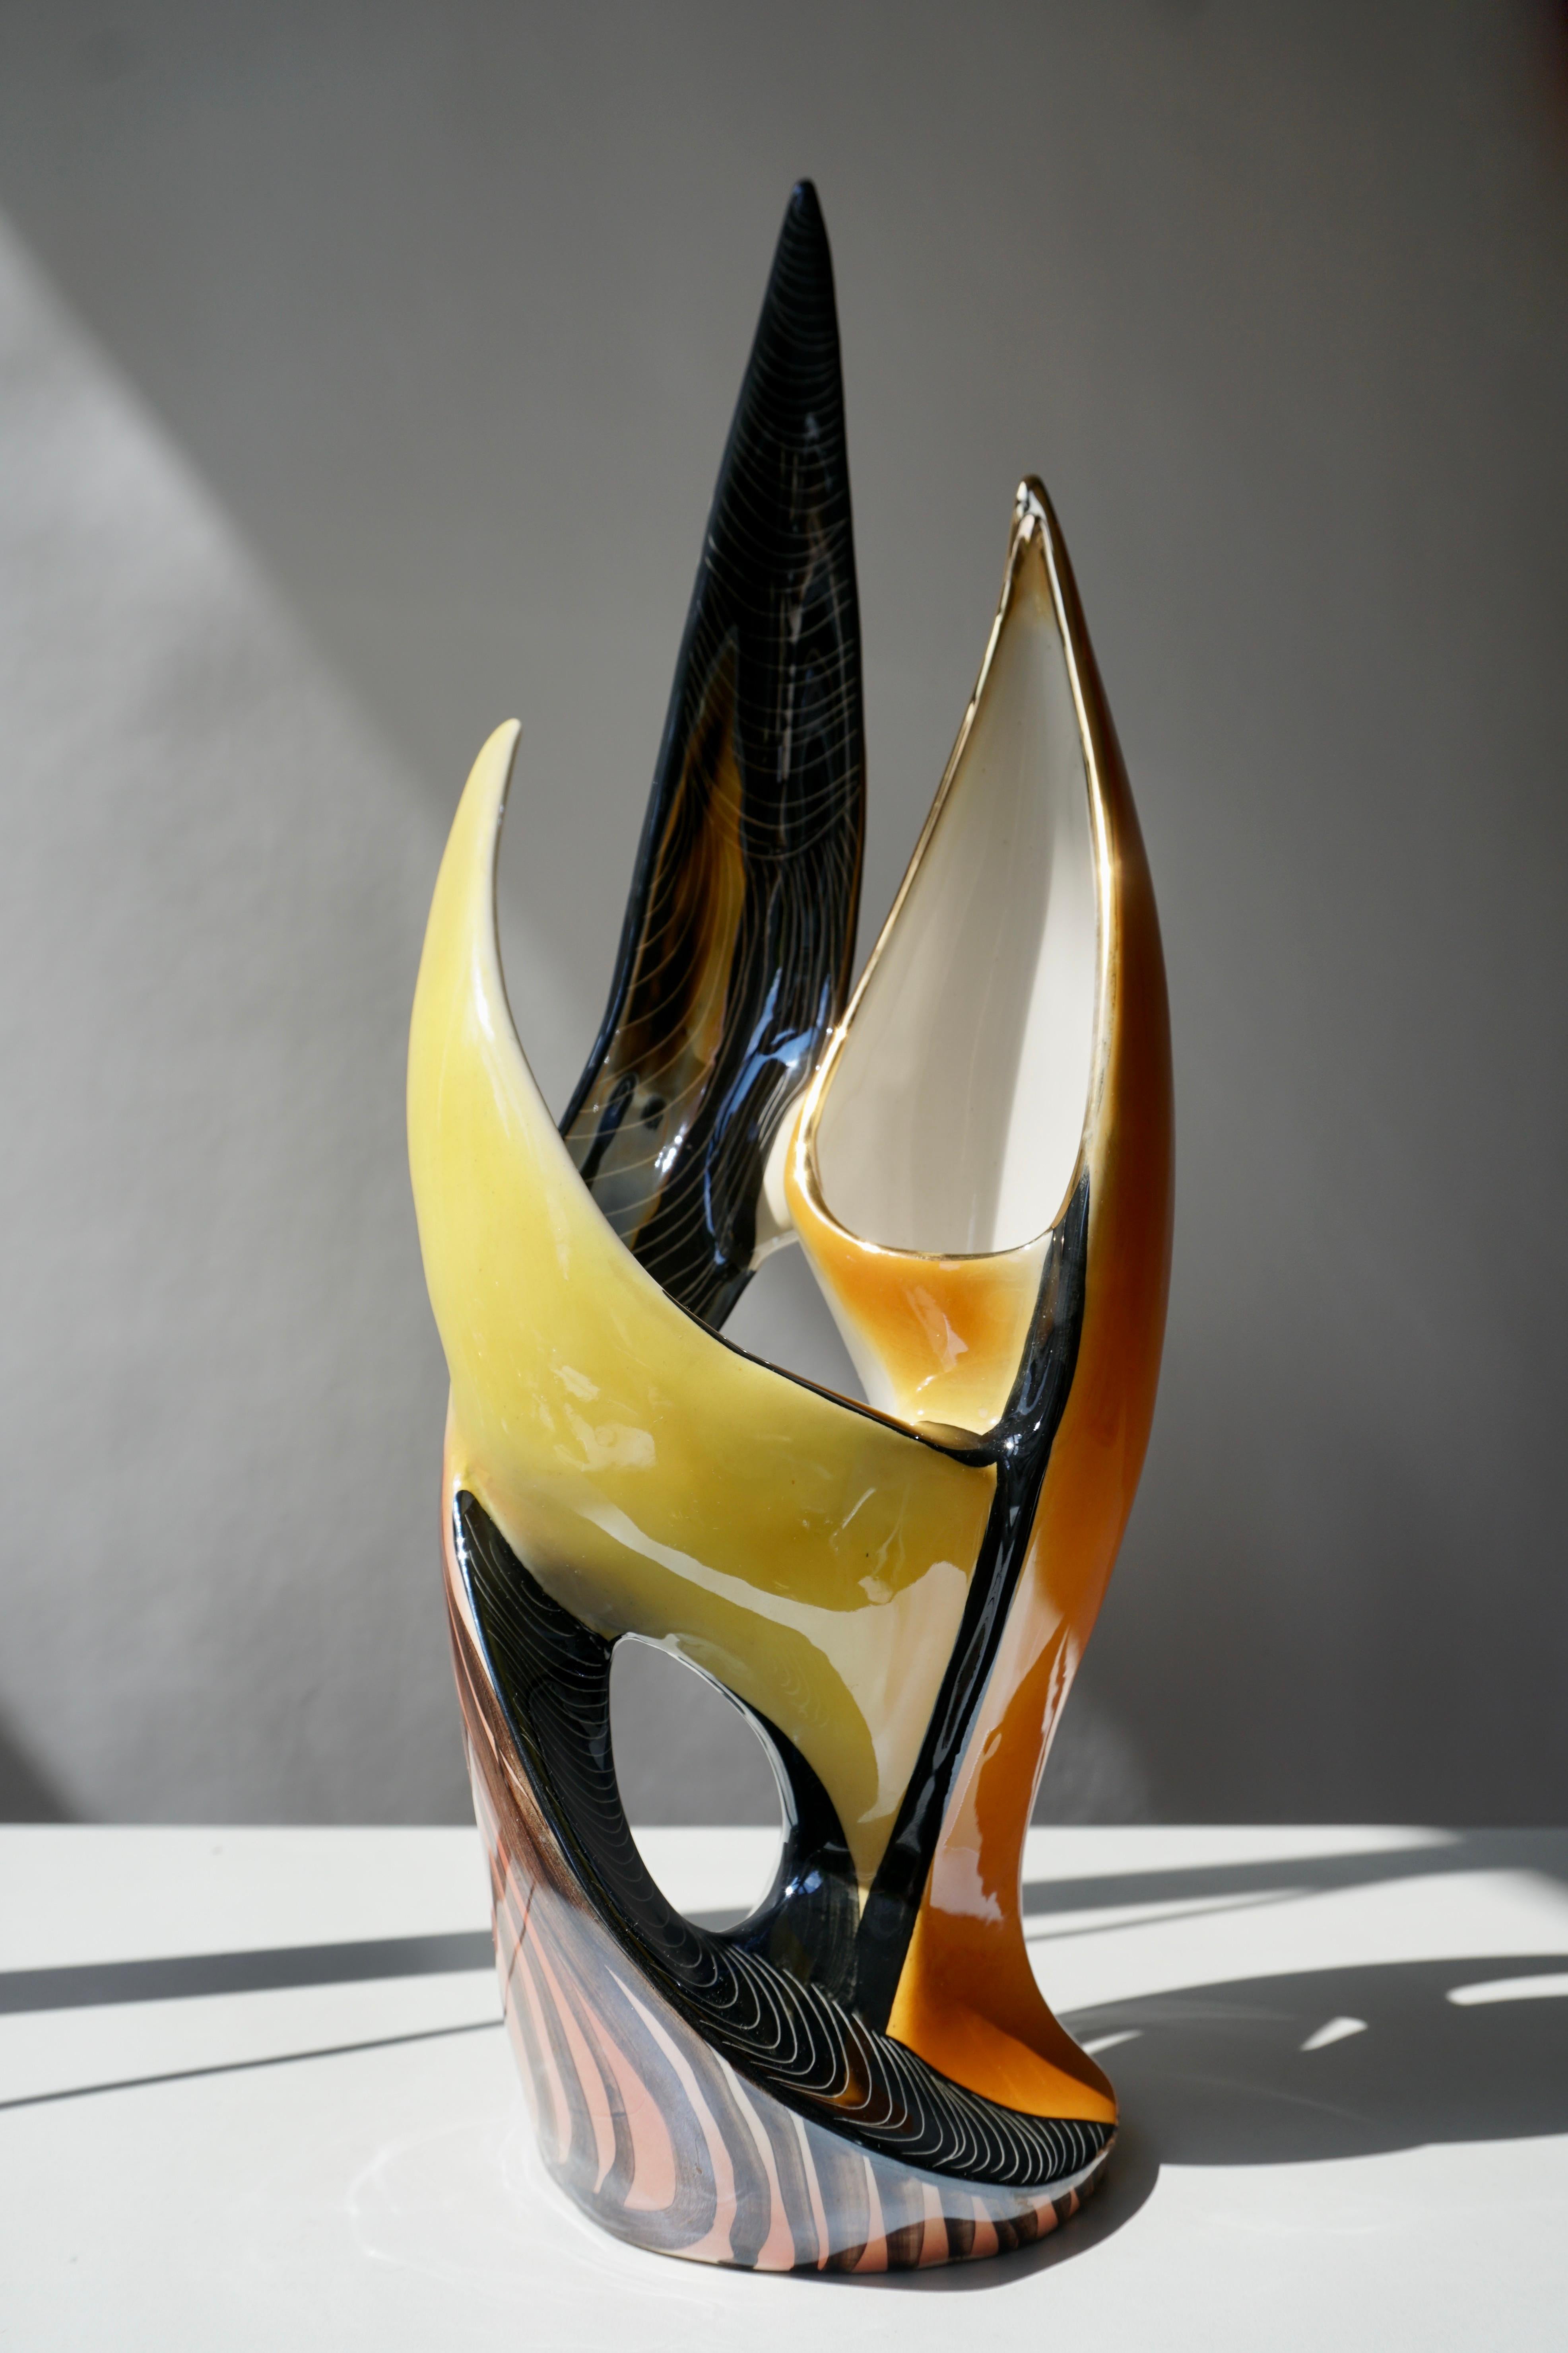 20th Century Sculptural Ceramic Vase For Sale